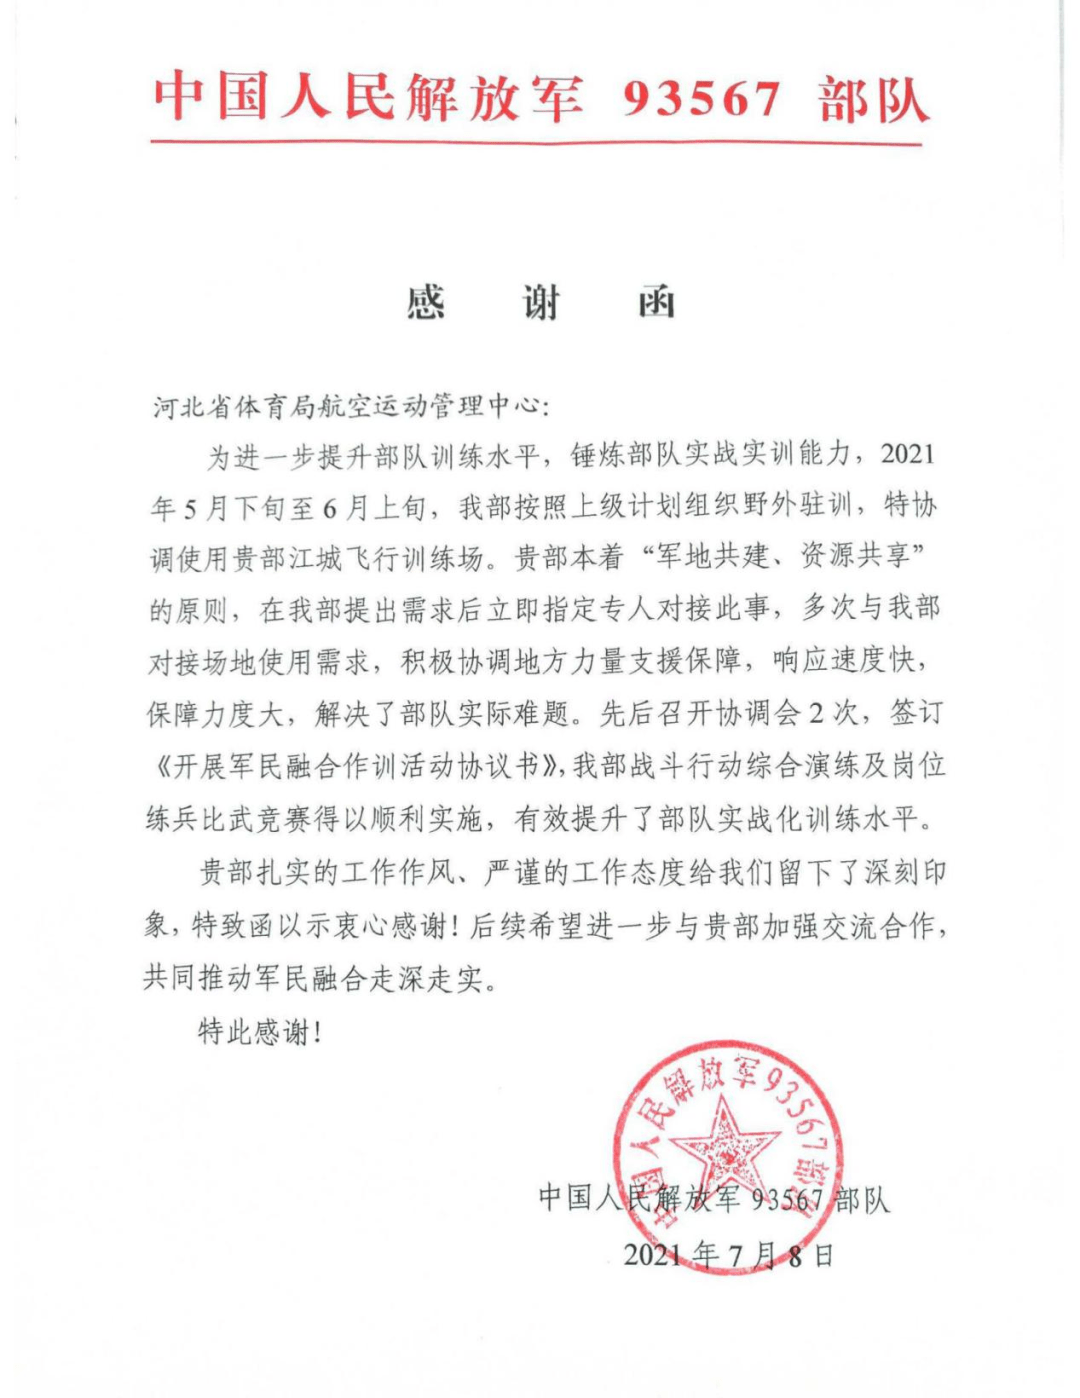 王柳暗处长宣读了中国人民解放军93567部队的《感谢函》,介绍了所属